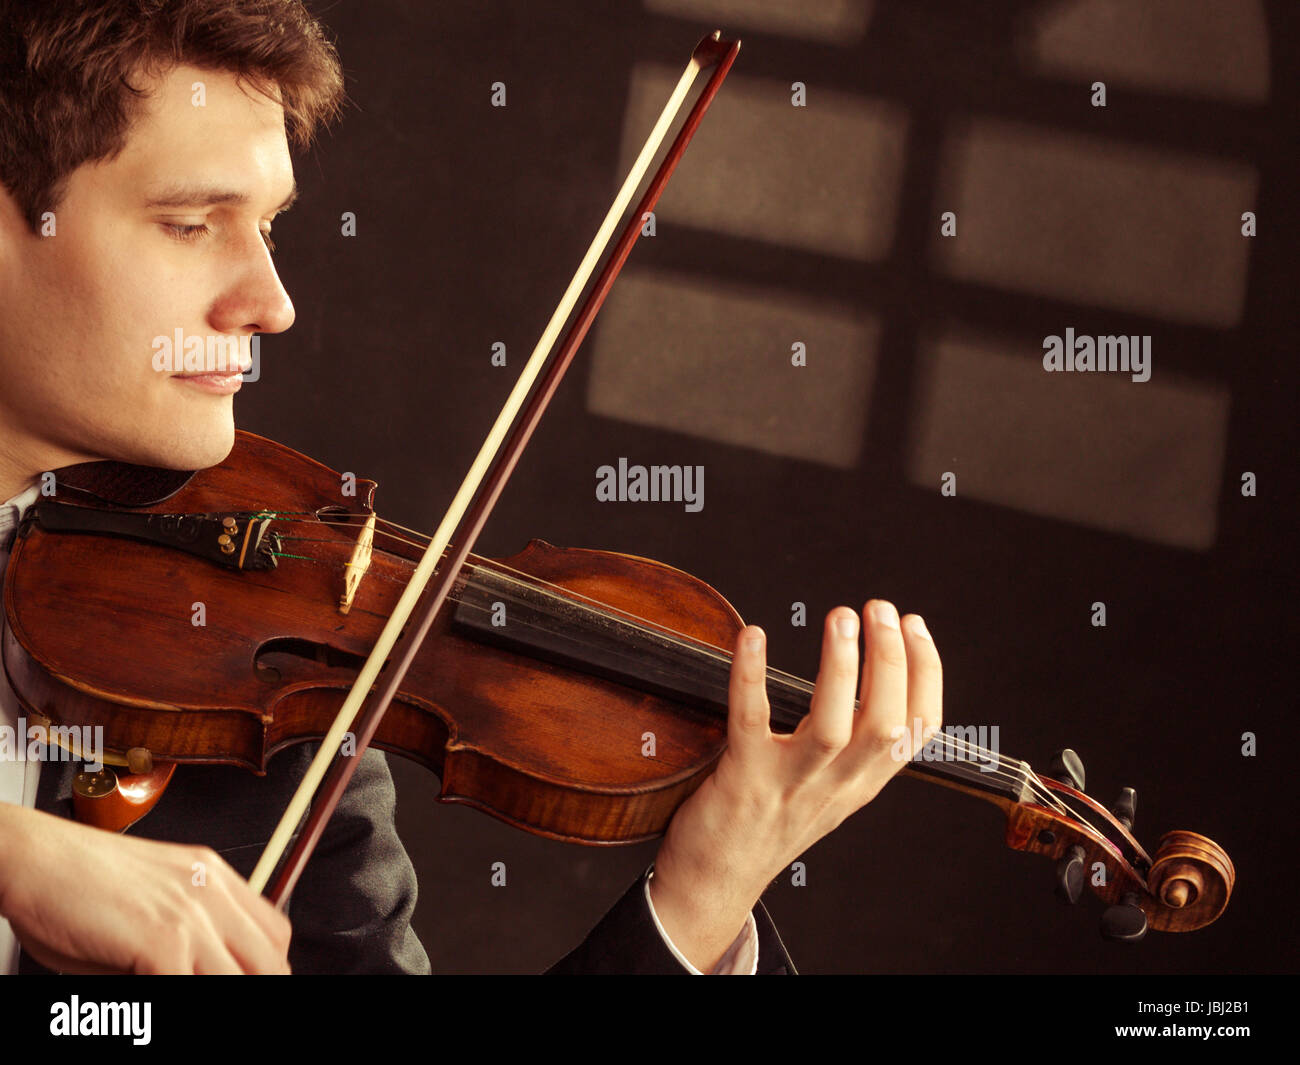 El arte y el artista. En el amor el hombre elegante joven violinista  violinista a tocar el violín bajo la ventana por la noche. La música clásica.  Foto de estudio Fotografía de